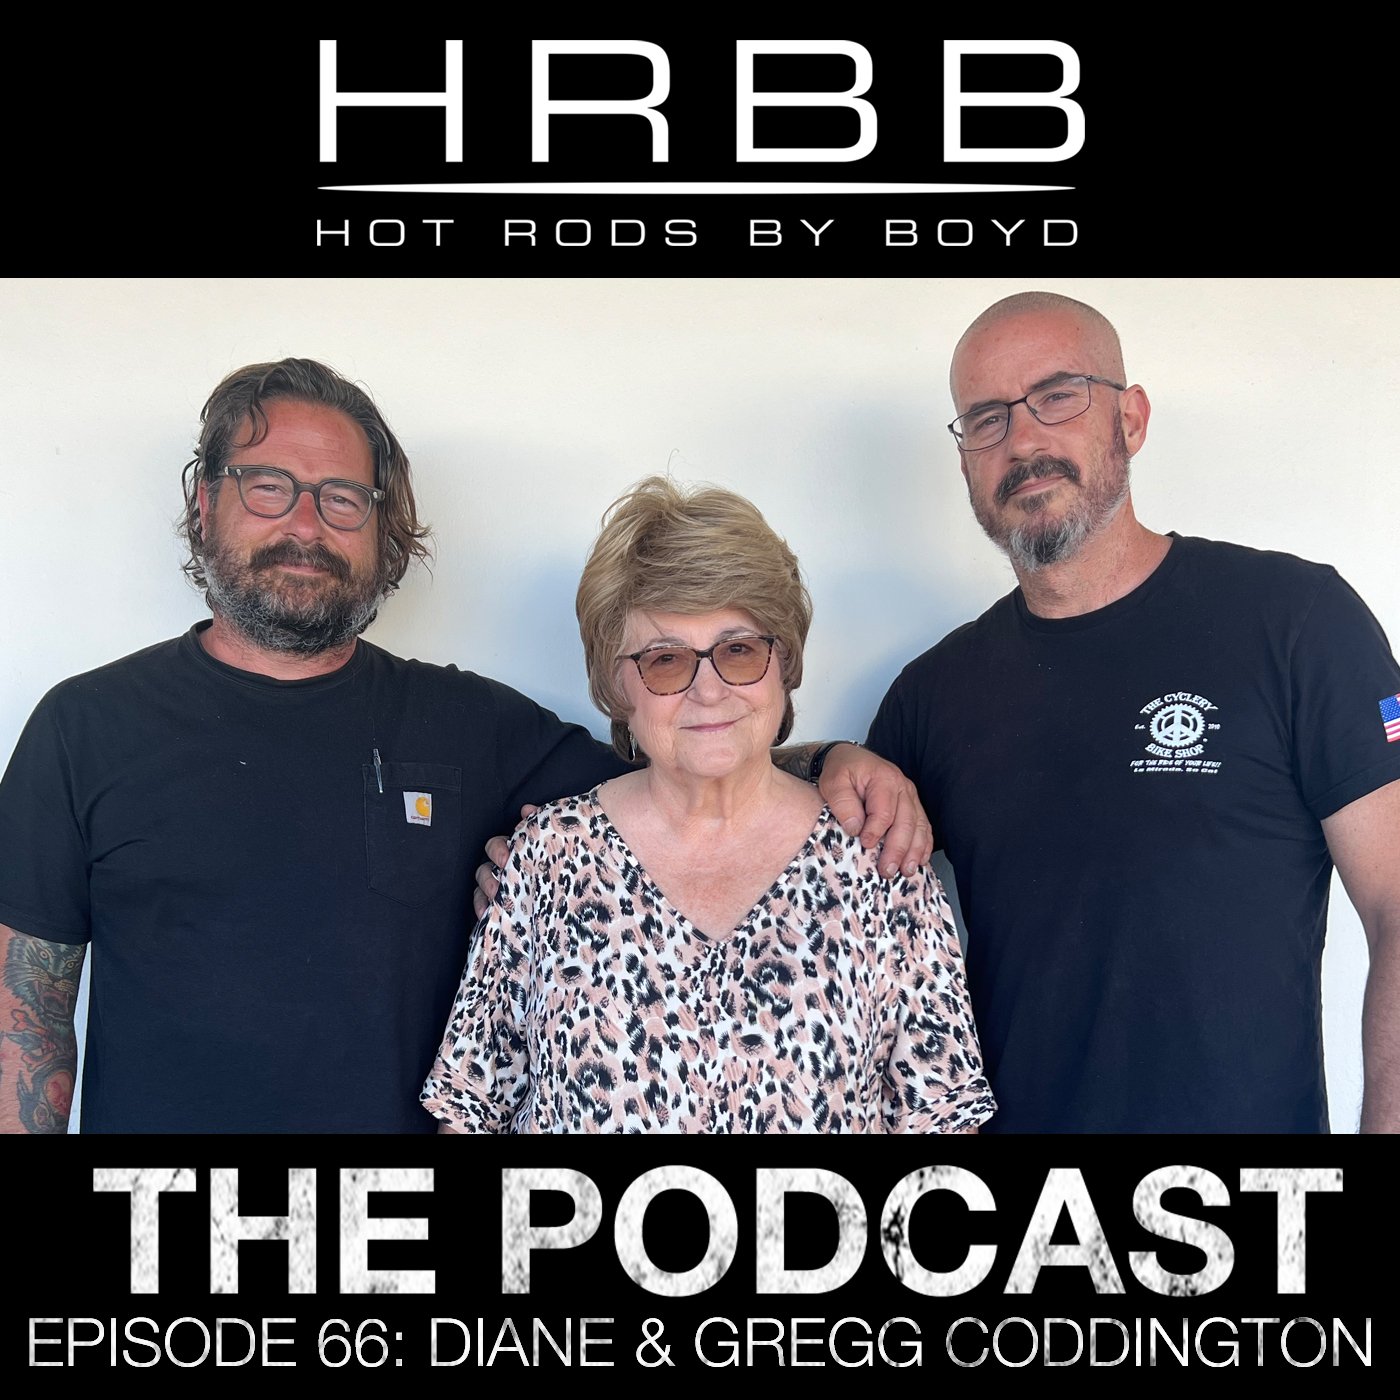 HRBB Episode 67 - Diane & Gregg Coddington